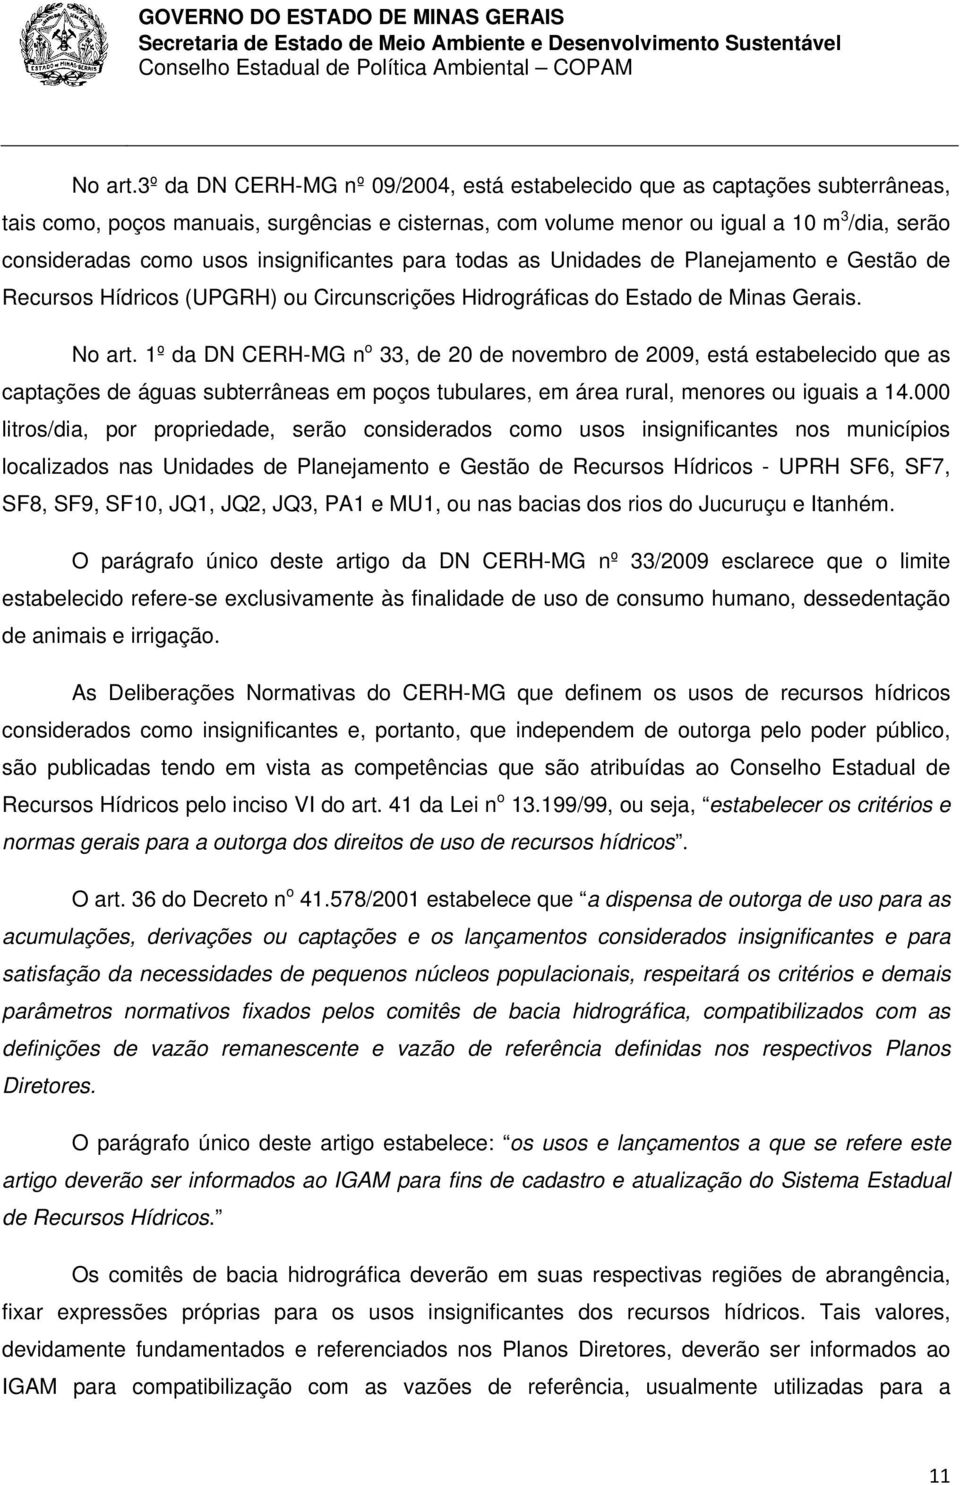 insignificantes para todas as Unidades de Planejamento e Gestão de Recursos Hídricos (UPGRH) ou Circunscrições Hidrográficas do Estado de Minas Gerais.